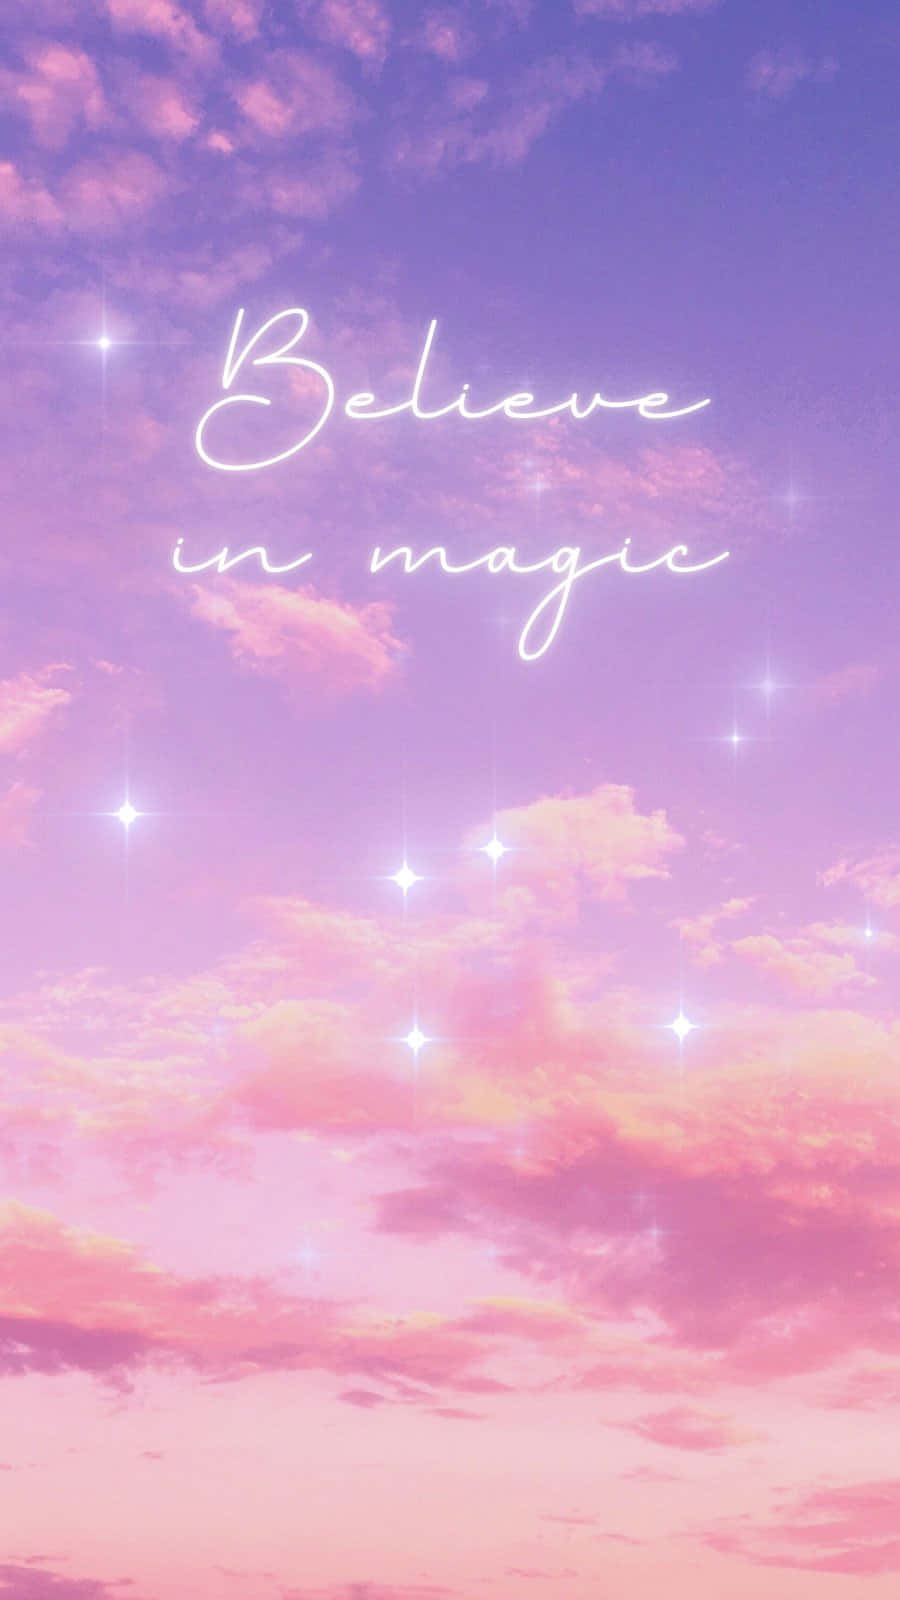 believe in magic wallpaper